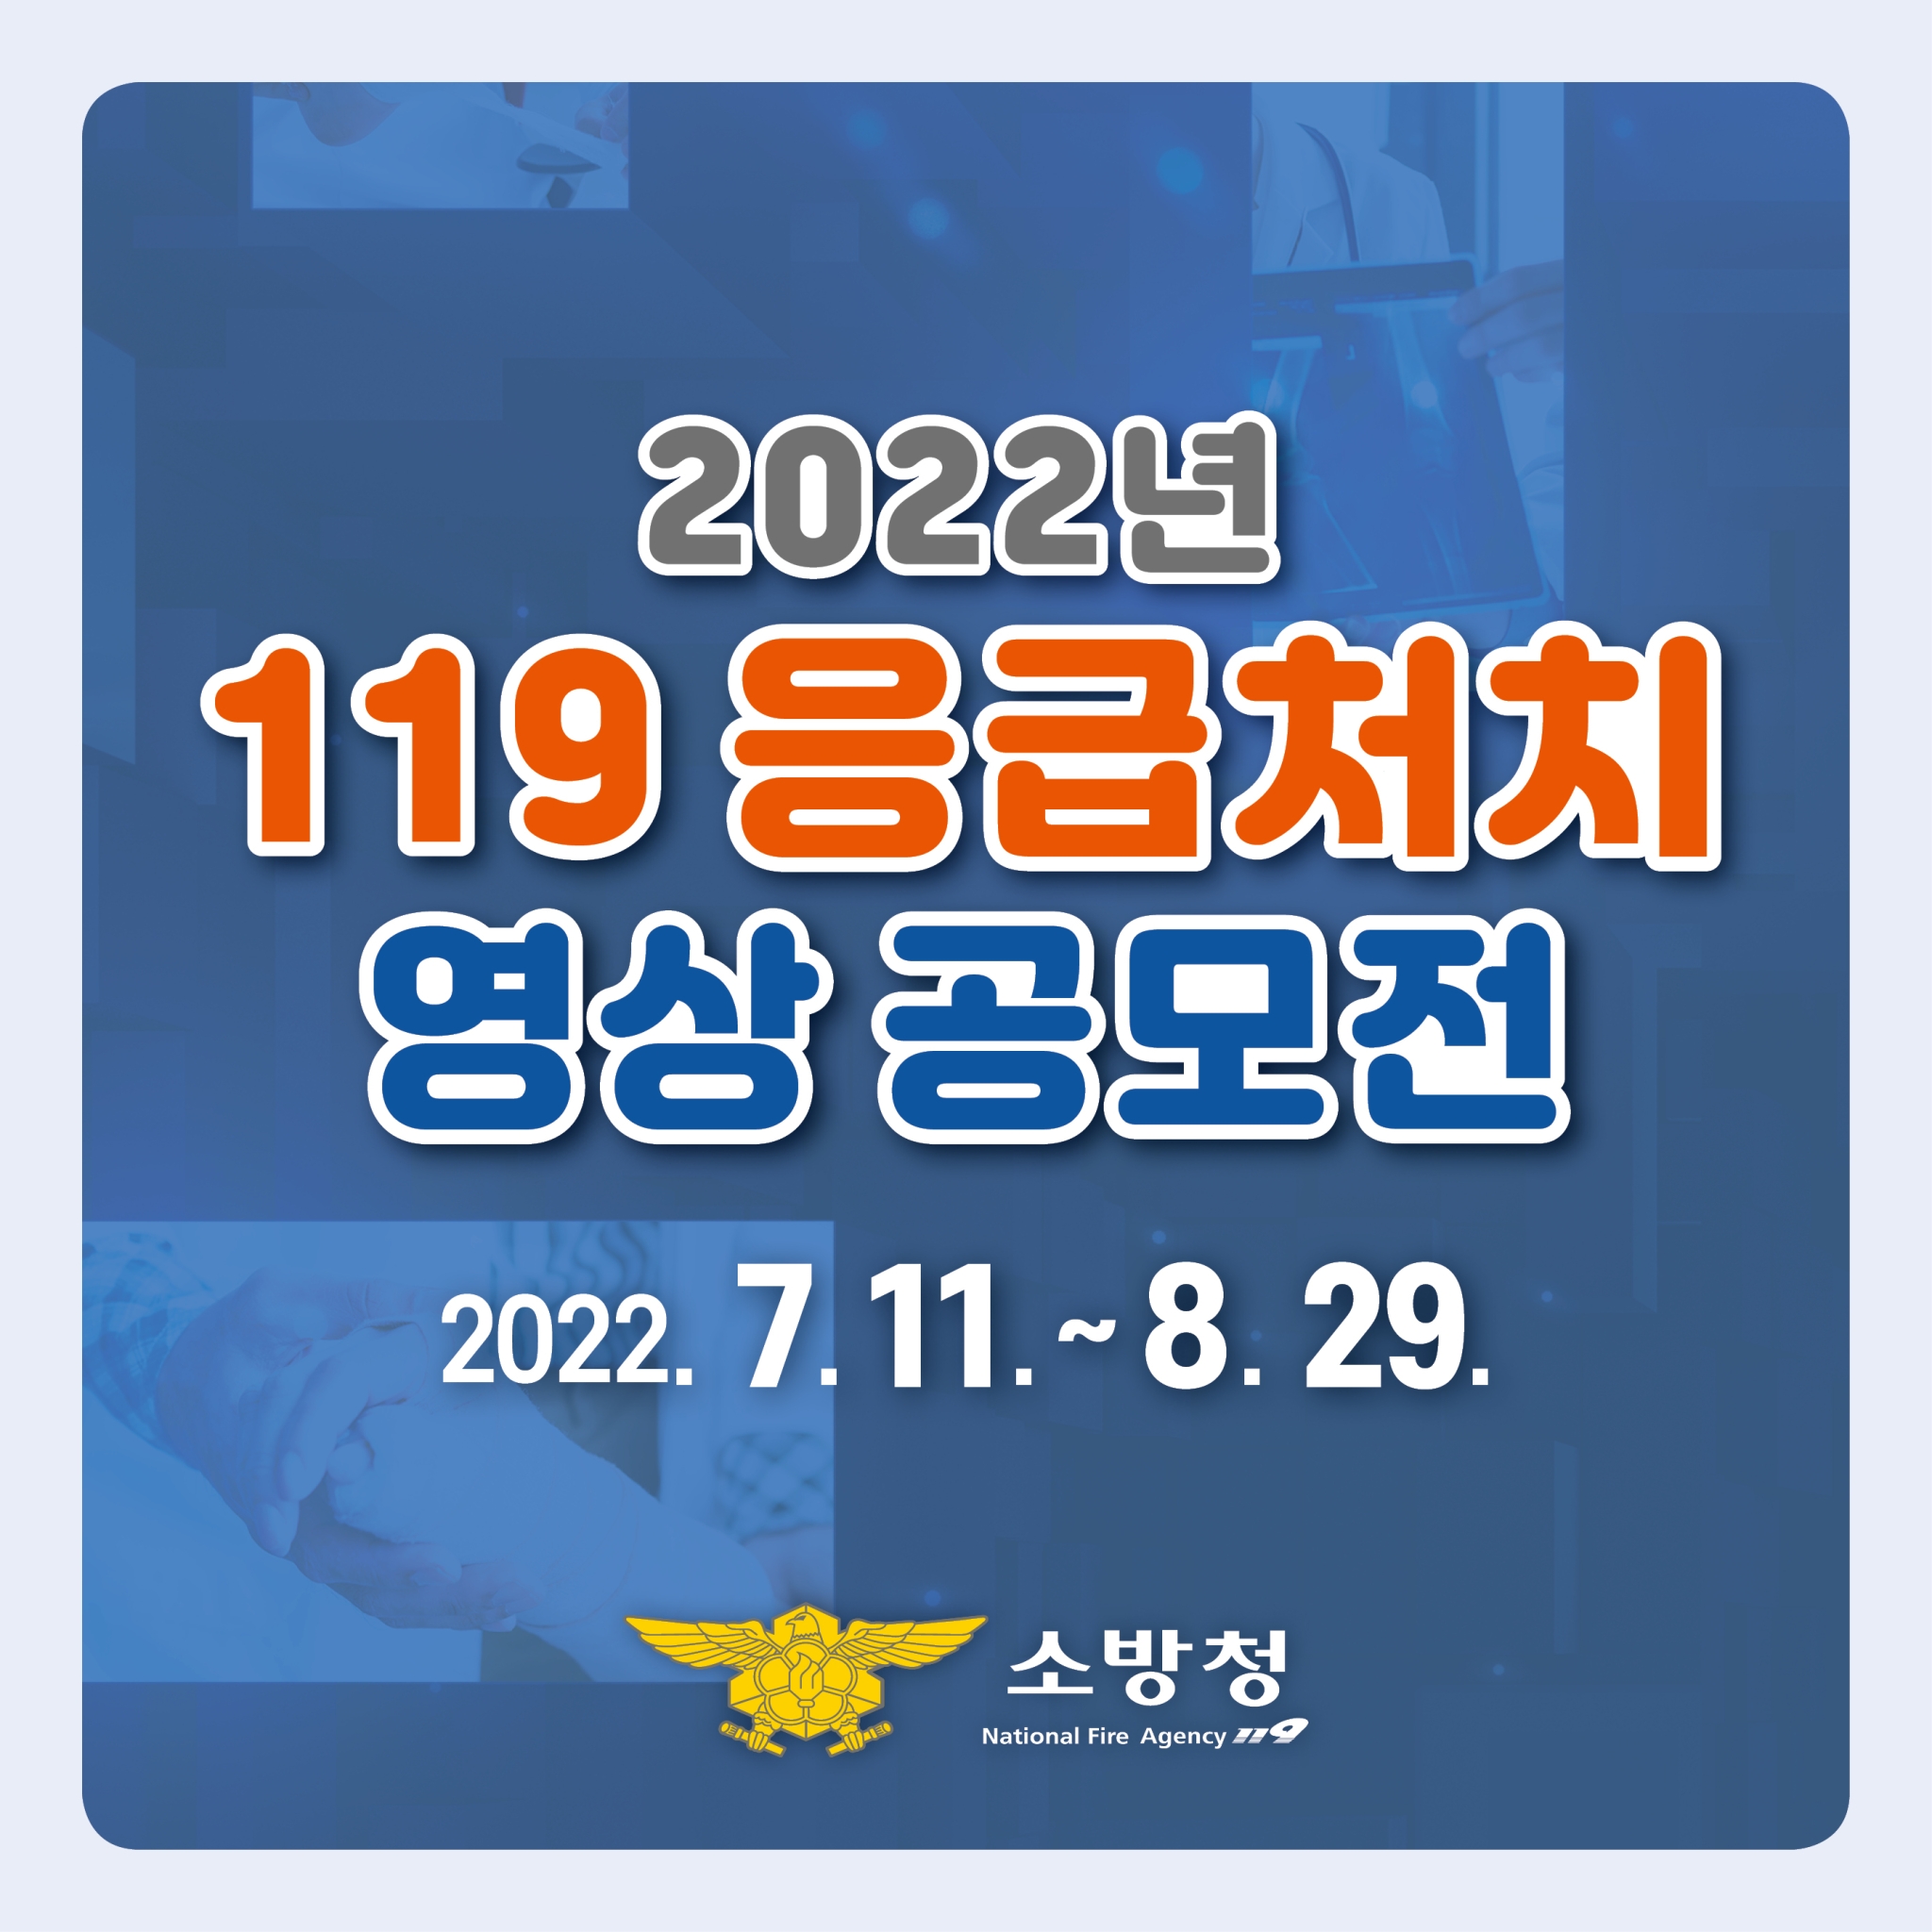 119 응급처치영상 공모전 카드뉴스(파랑)_1